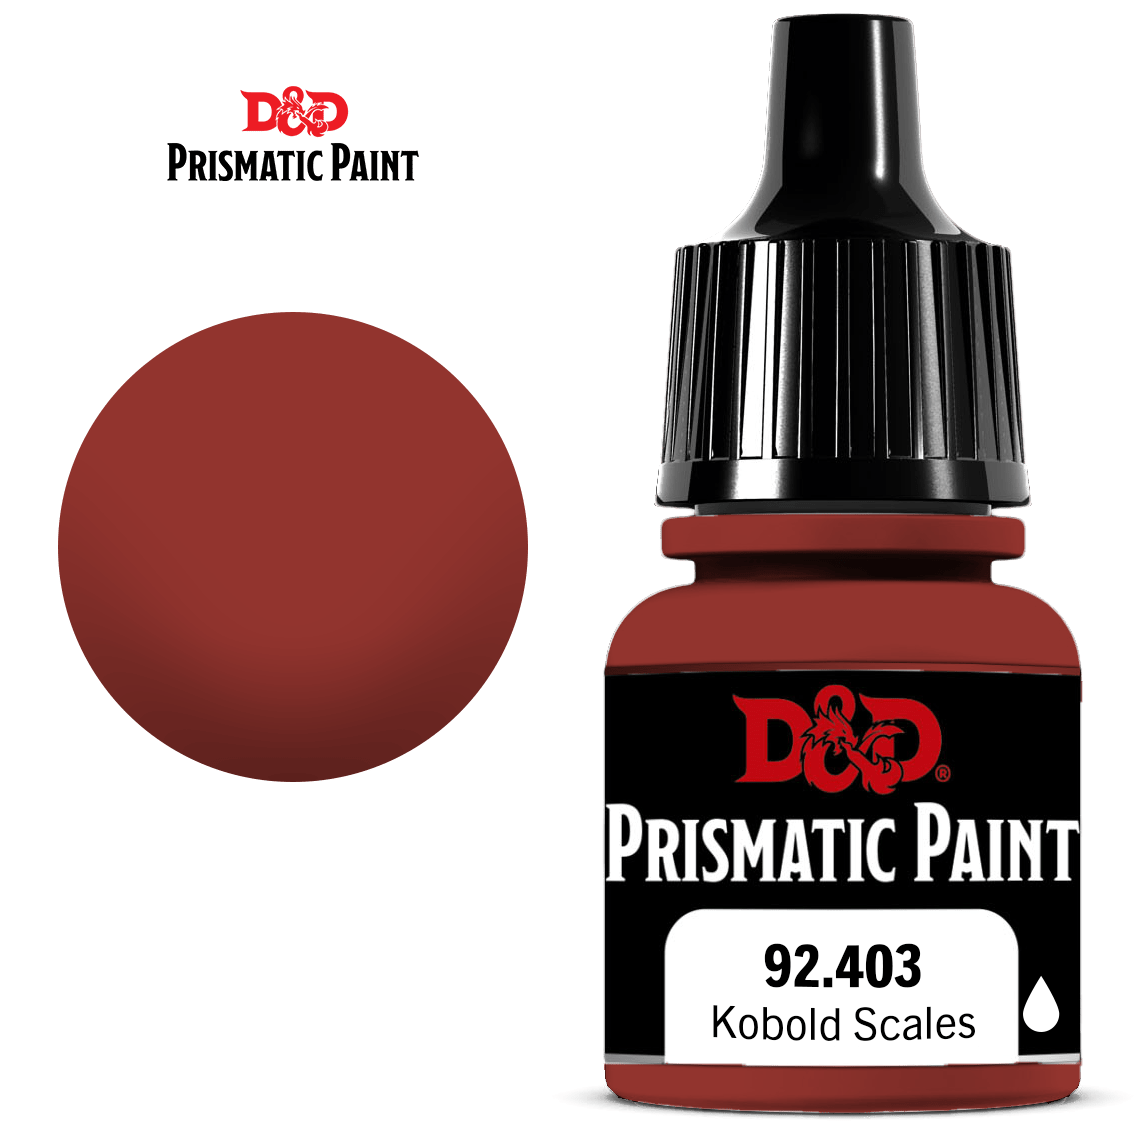 D&D Prismatic Paint: Kobold Scales